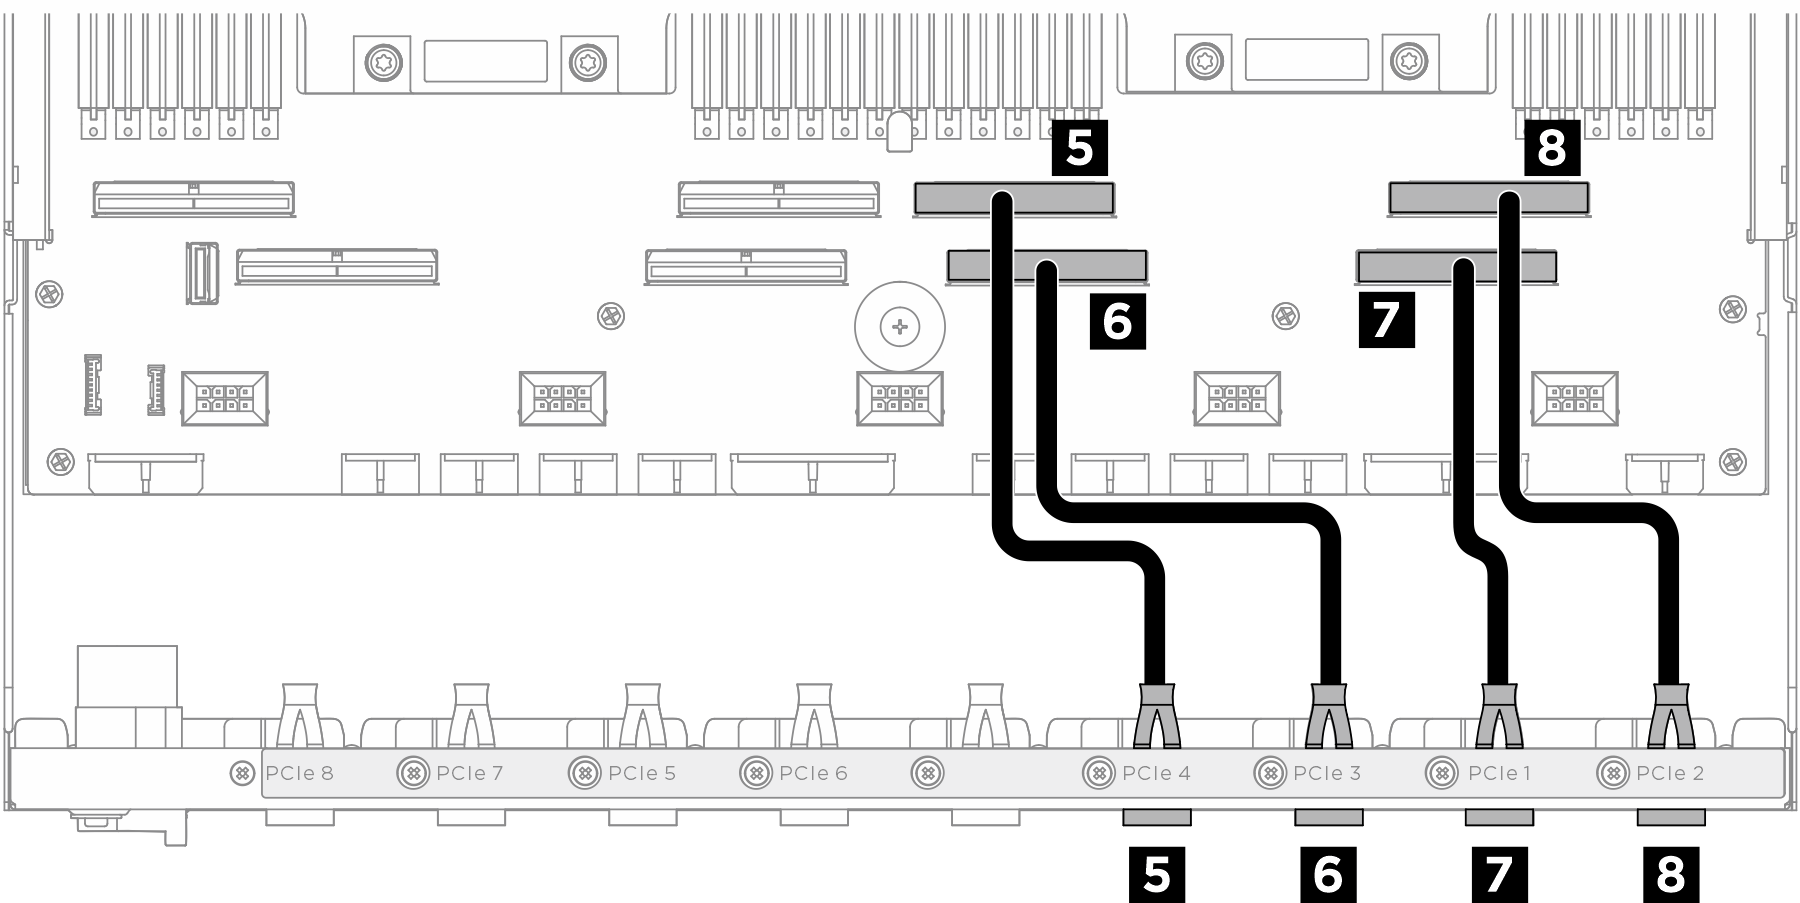 Tableau de commutation PCIe cable routing (signal cables)